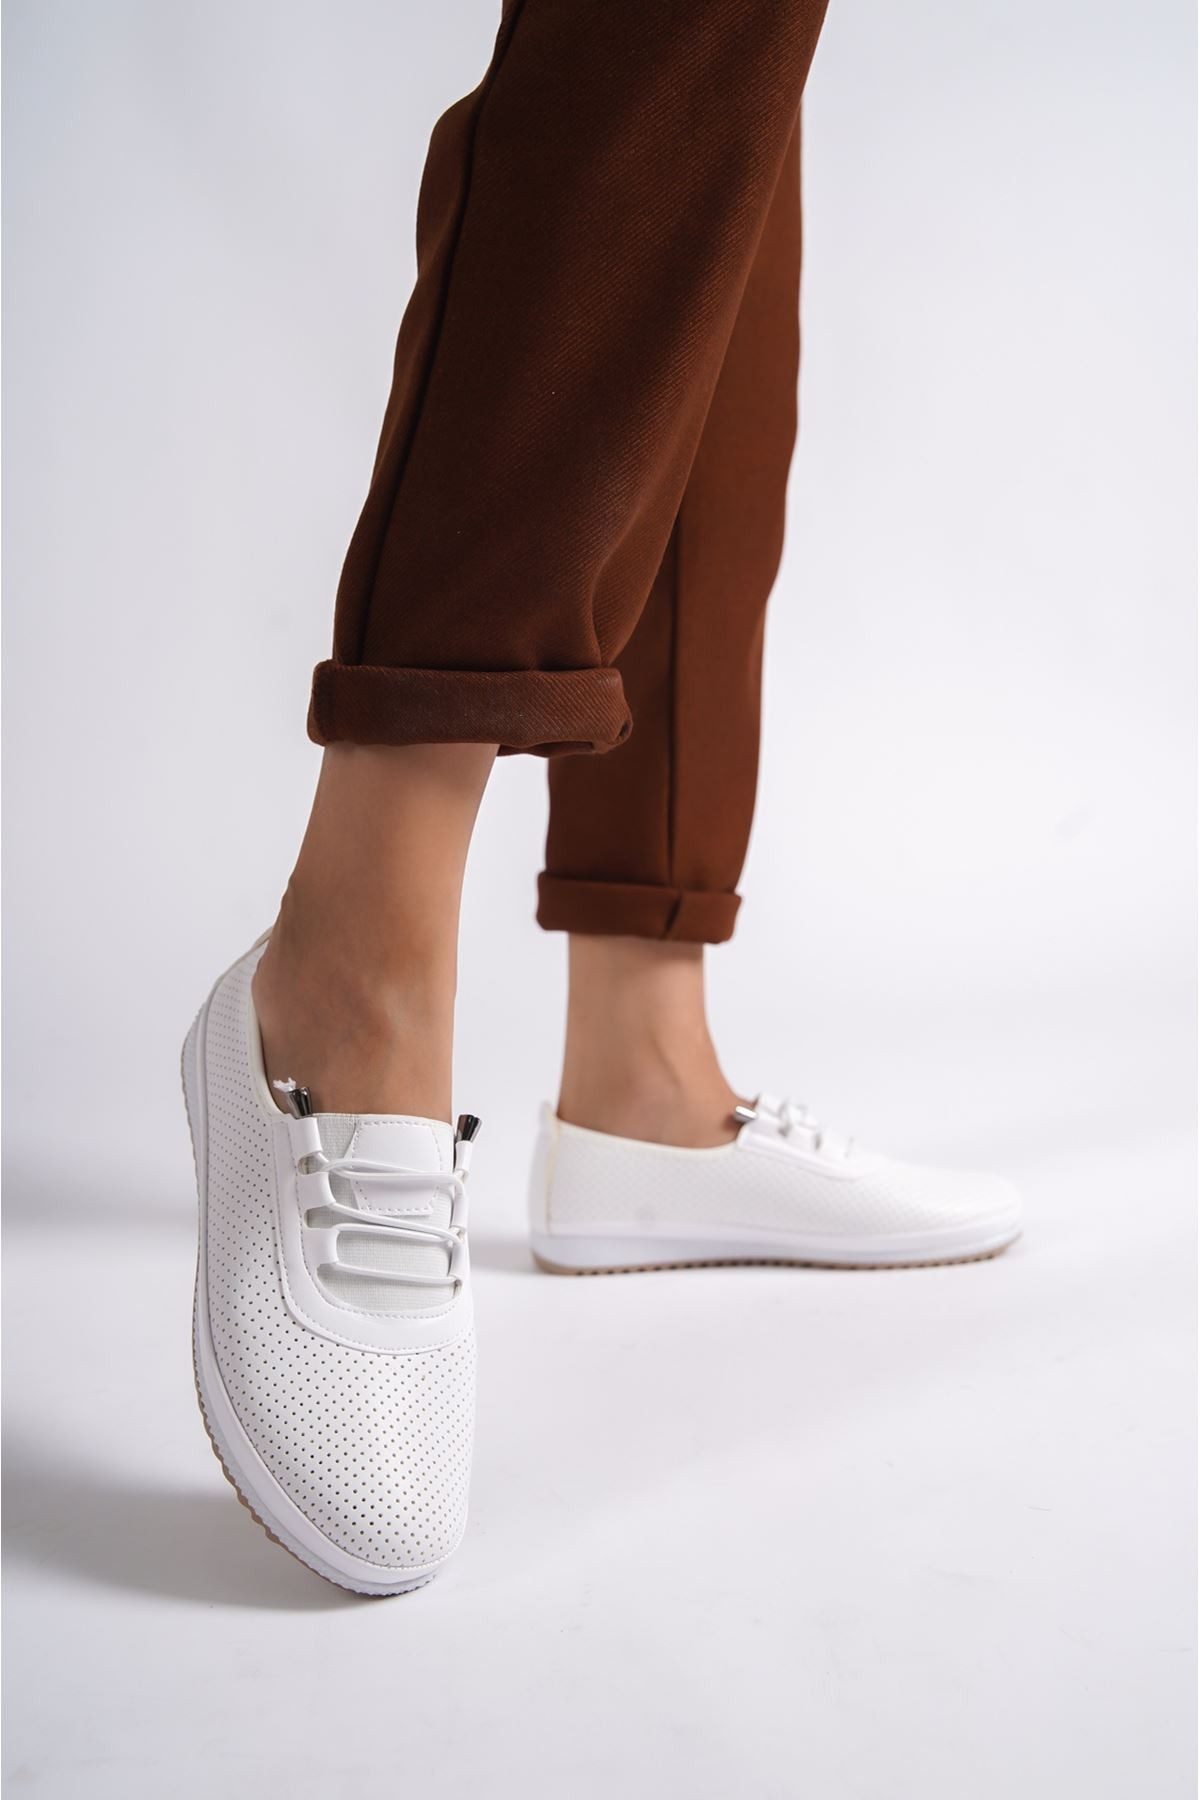 CLZ741 - Beyaz Cilt Babet Ayakkabı